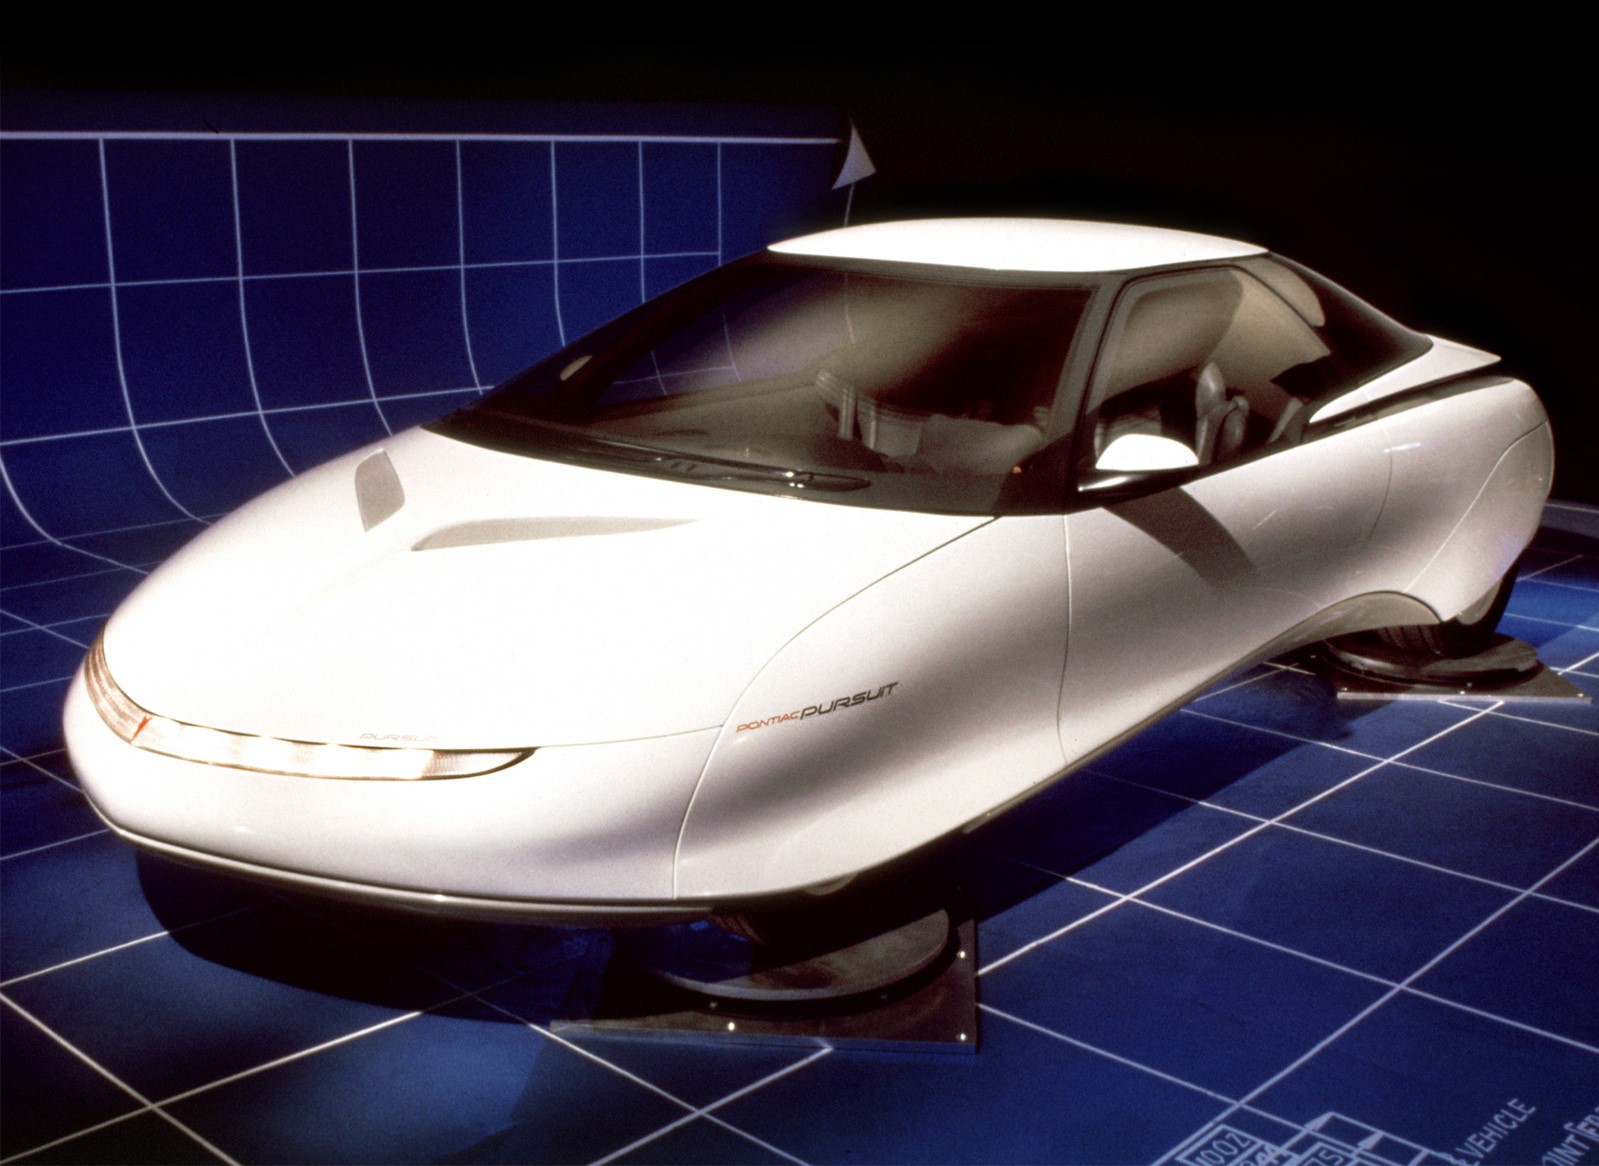 1987 Pontiac Pursuit Concept, Pontiac, Pontiac Pursuit